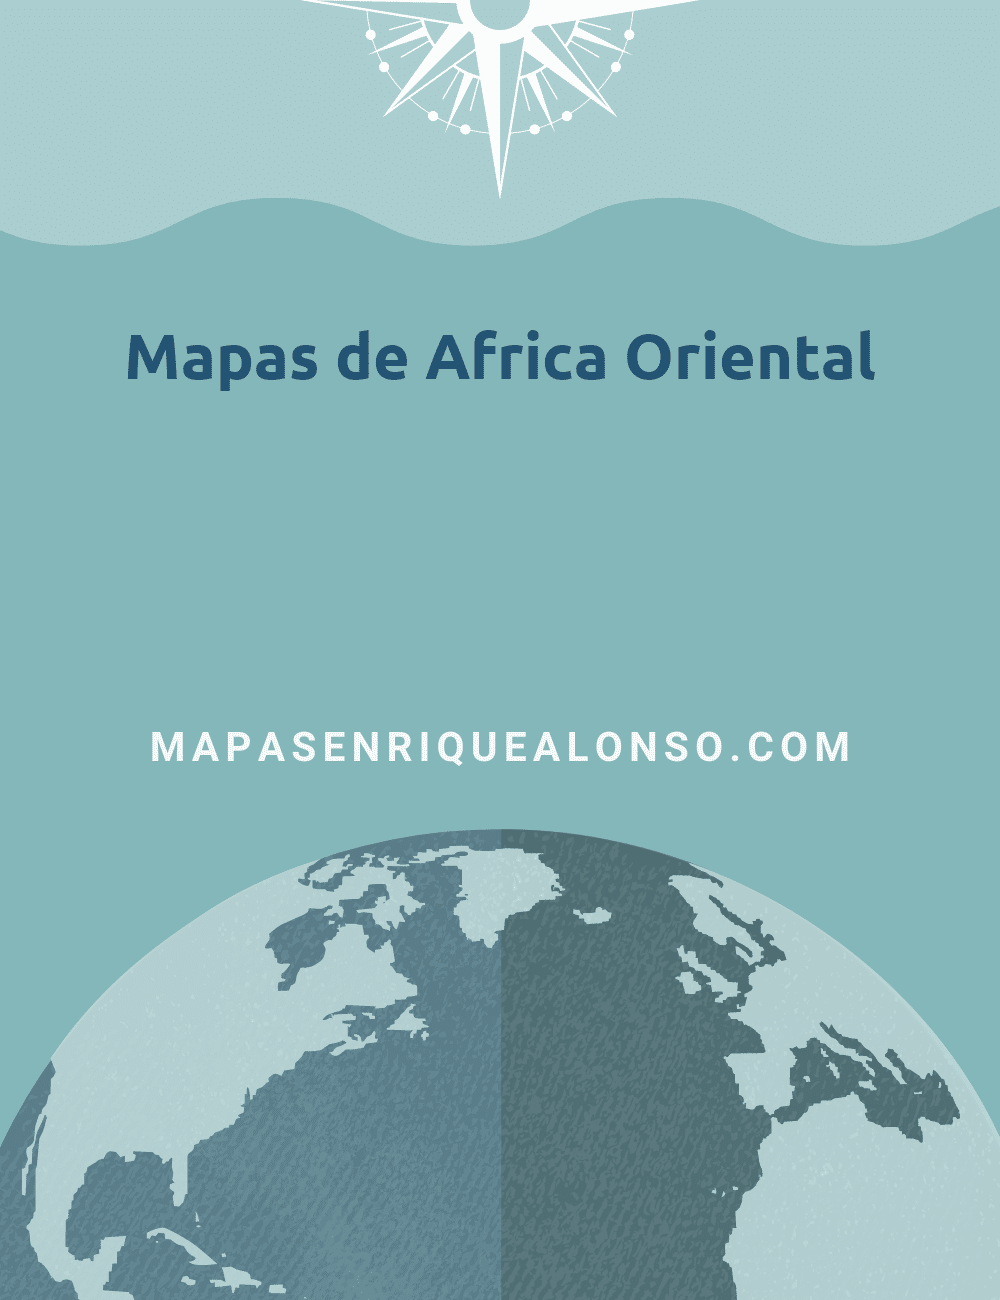 Mapas de Africa Oriental